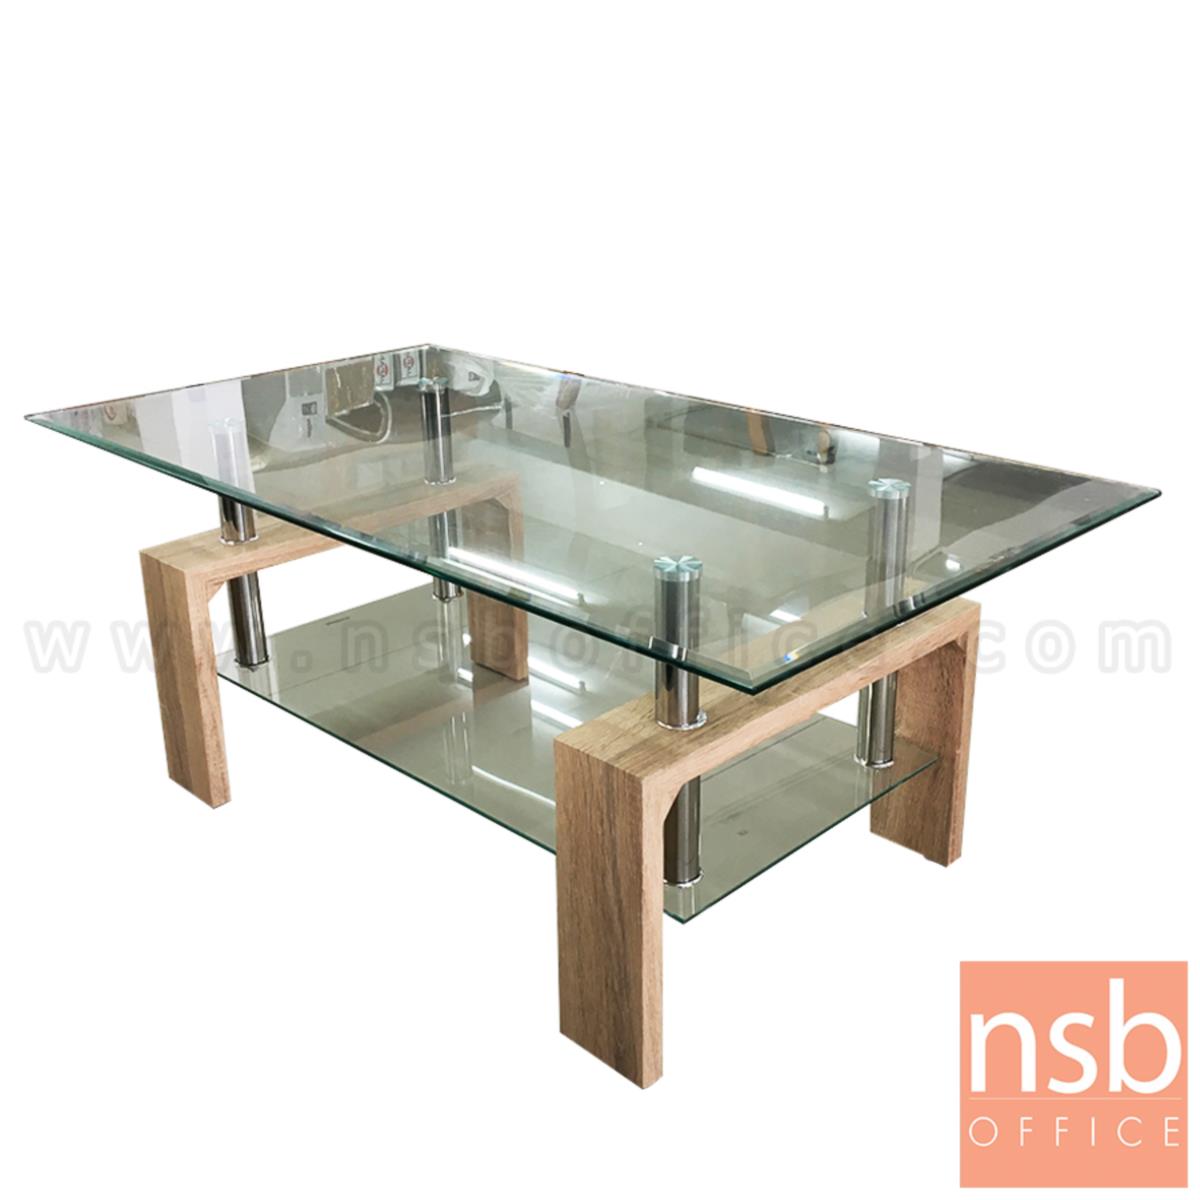 B13A194:โต๊ะกลางกระจก รุ่น Hawthorne (ฮอว์ธอร์น) ขนาด 110W cm. โครงขาสีไวท์โอ๊ค 